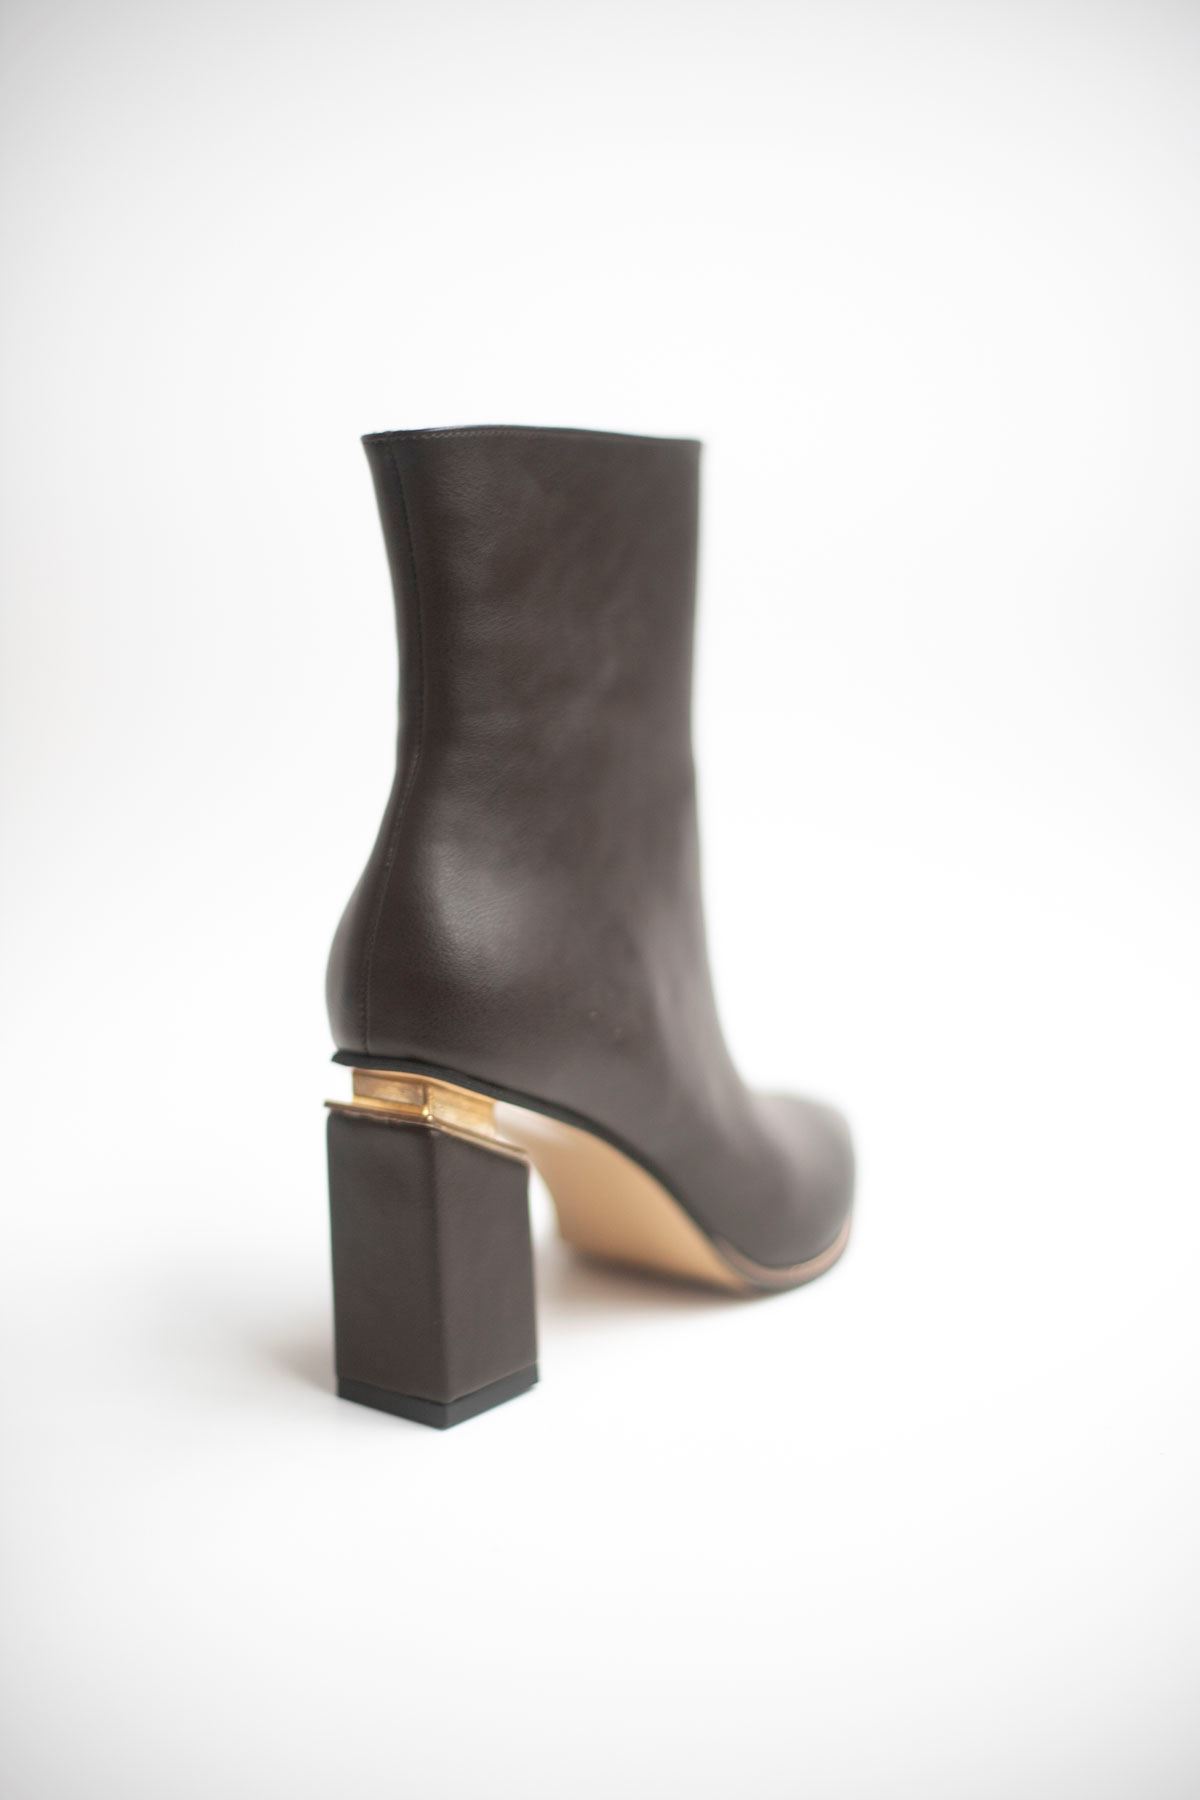 Alara Zarif Altın Renk Aksesuarlı Klasik Fermuarlı Abiye Kadın Bot Ayakkabı-Acı Kahverengi